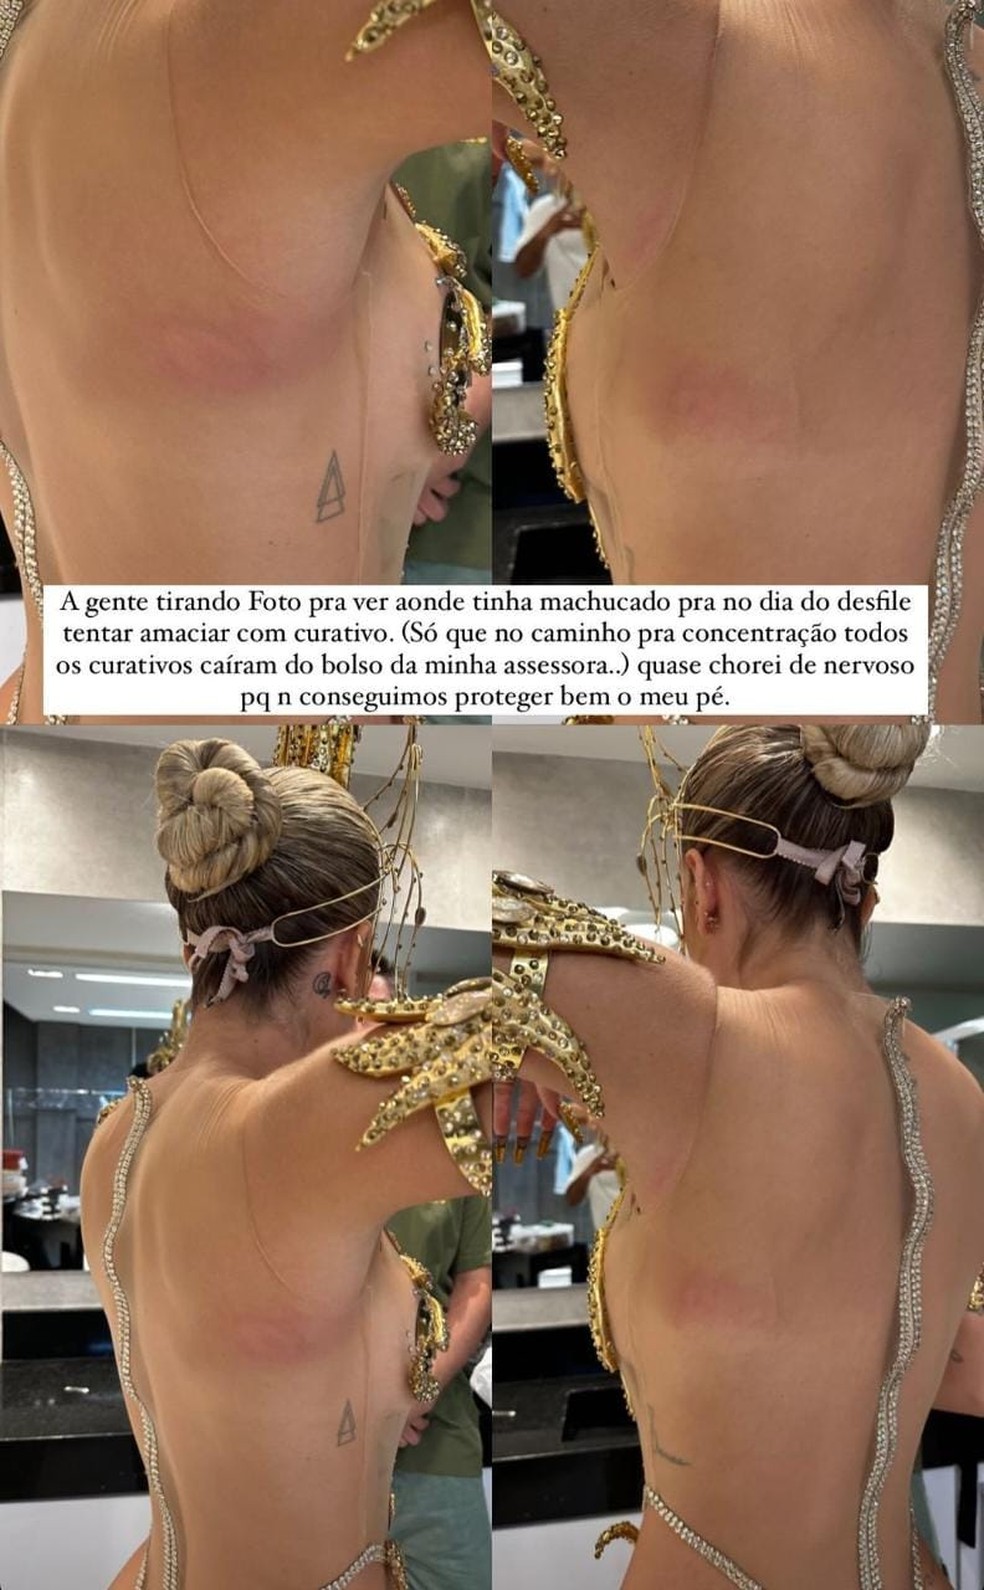 Lore Improta mostra machucados após desfile — Foto: Reprodução/Instagram